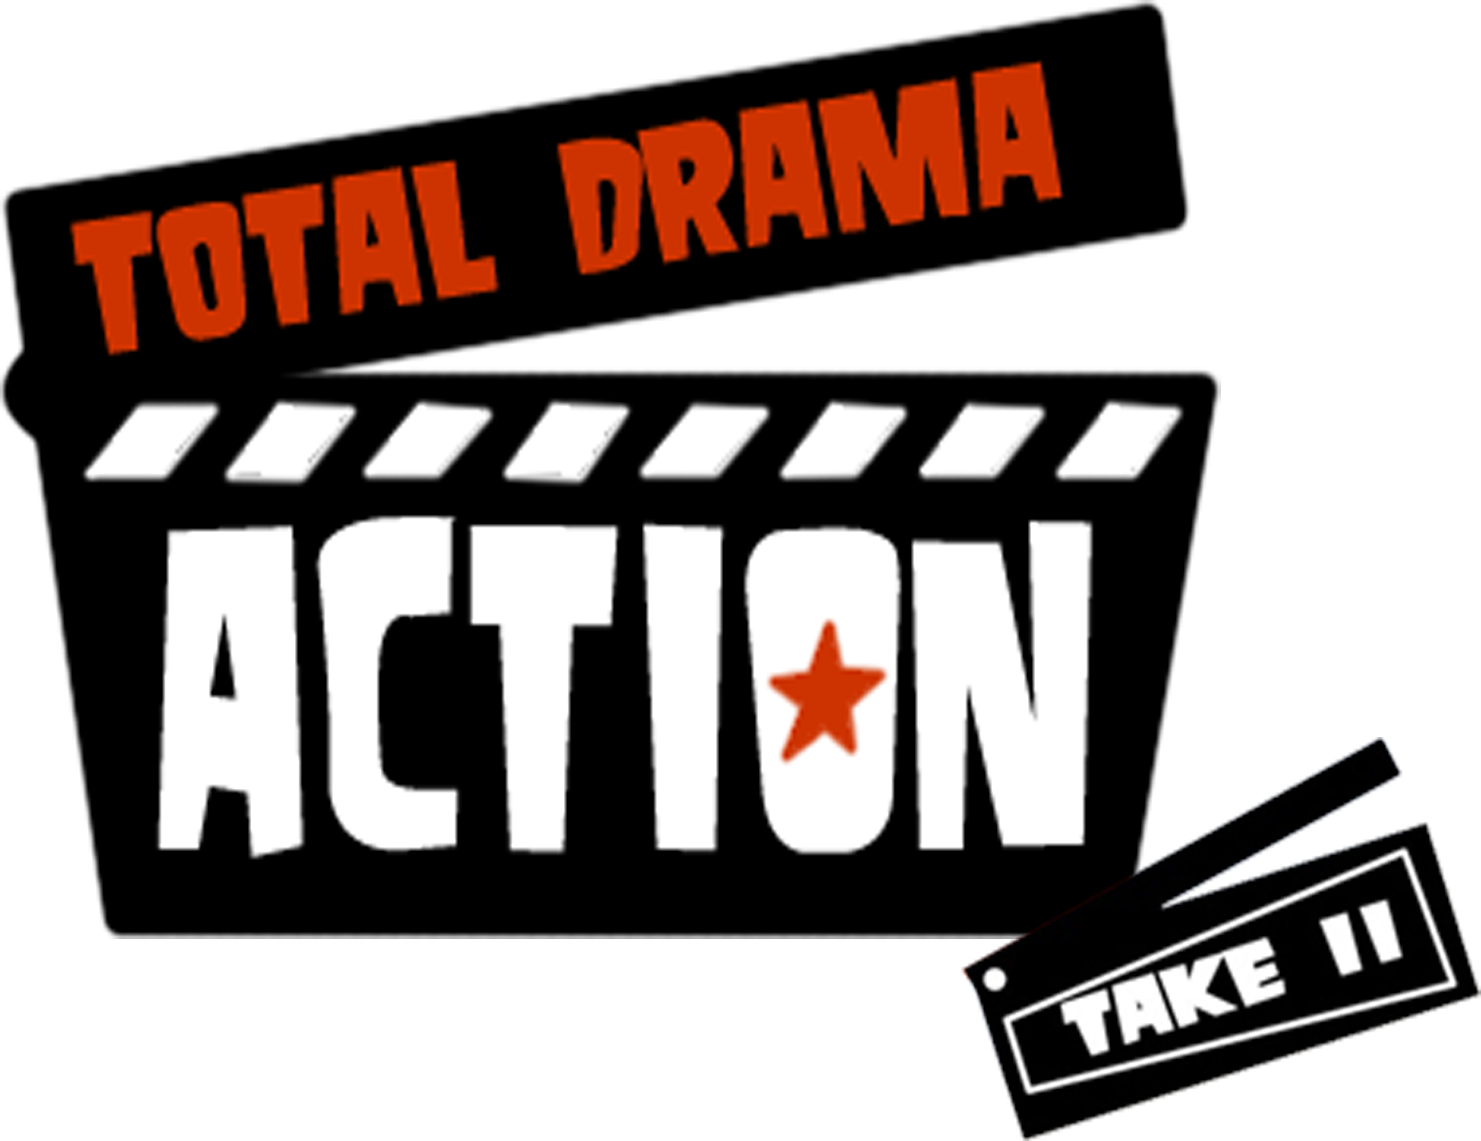 Total Drama Action - Total Drama Action Take Ii (1481x1141)